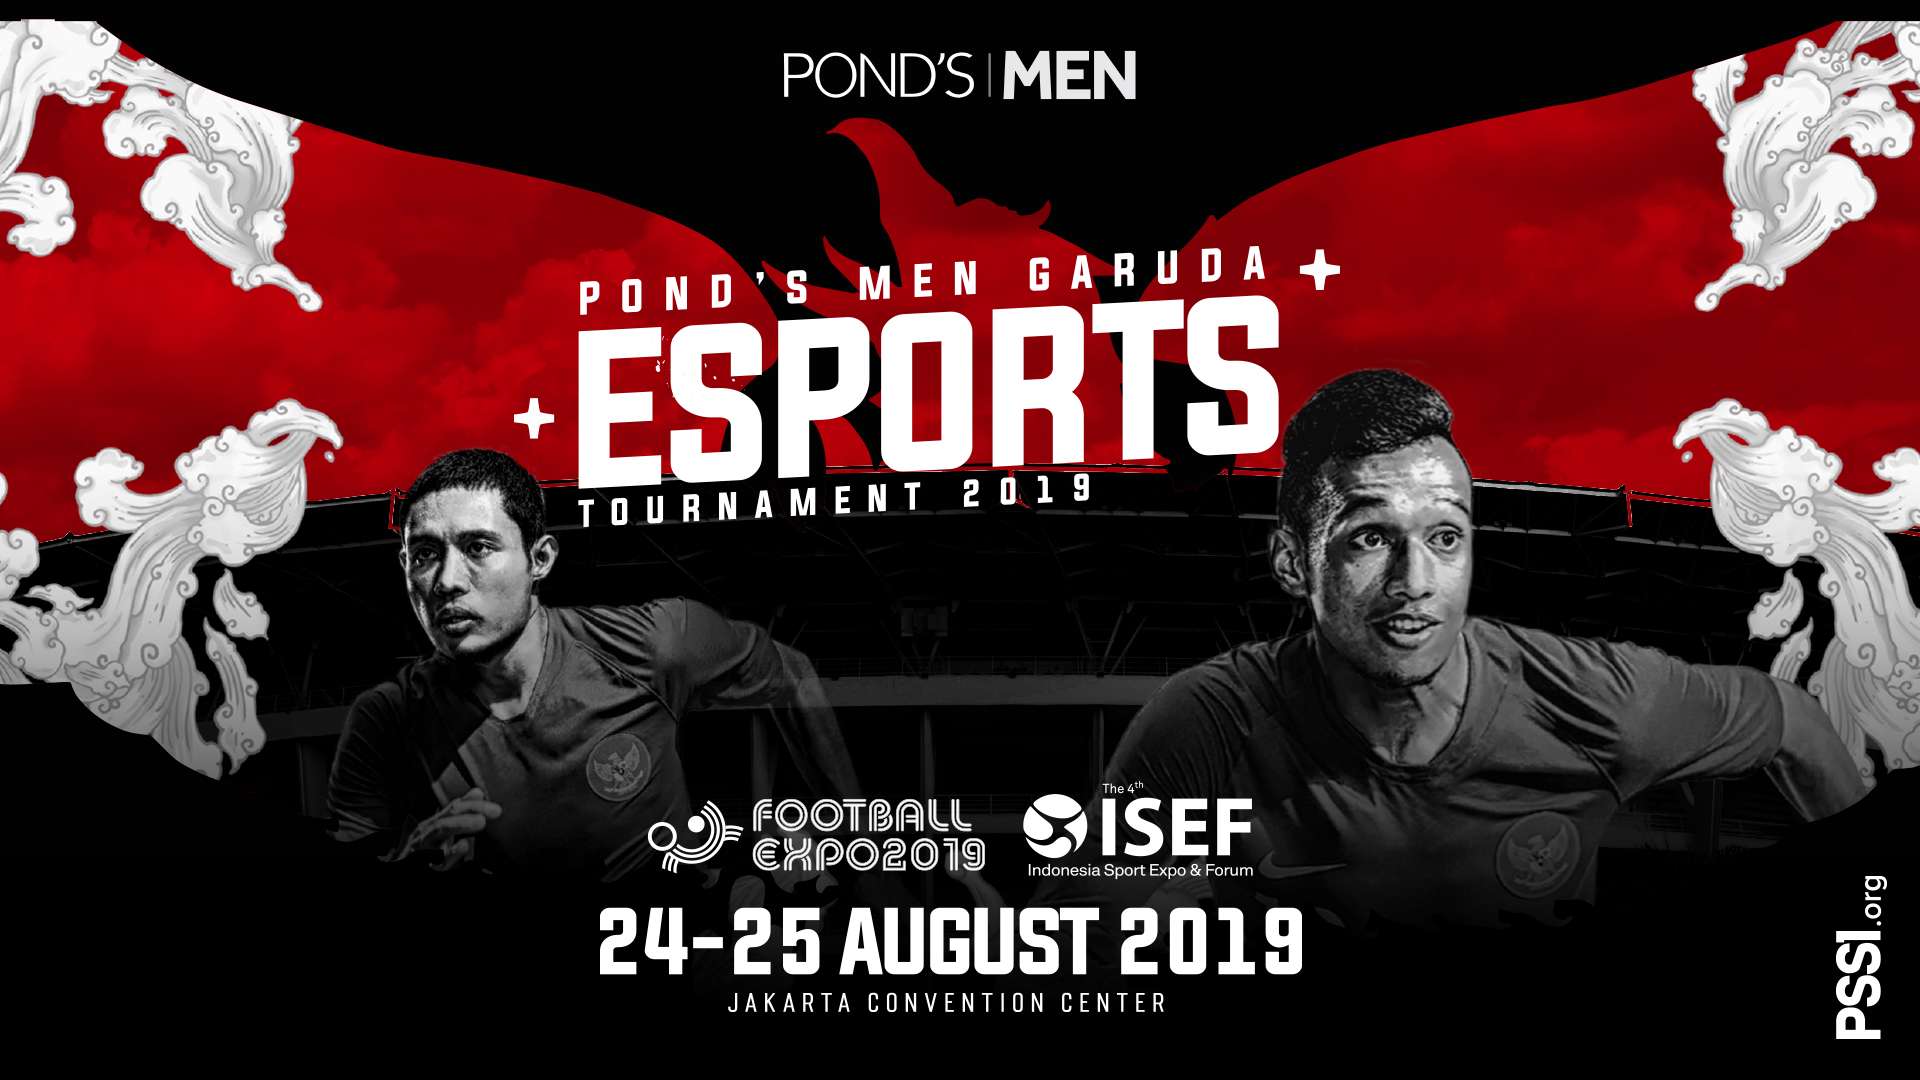 POND'S MEN Esports Tournament